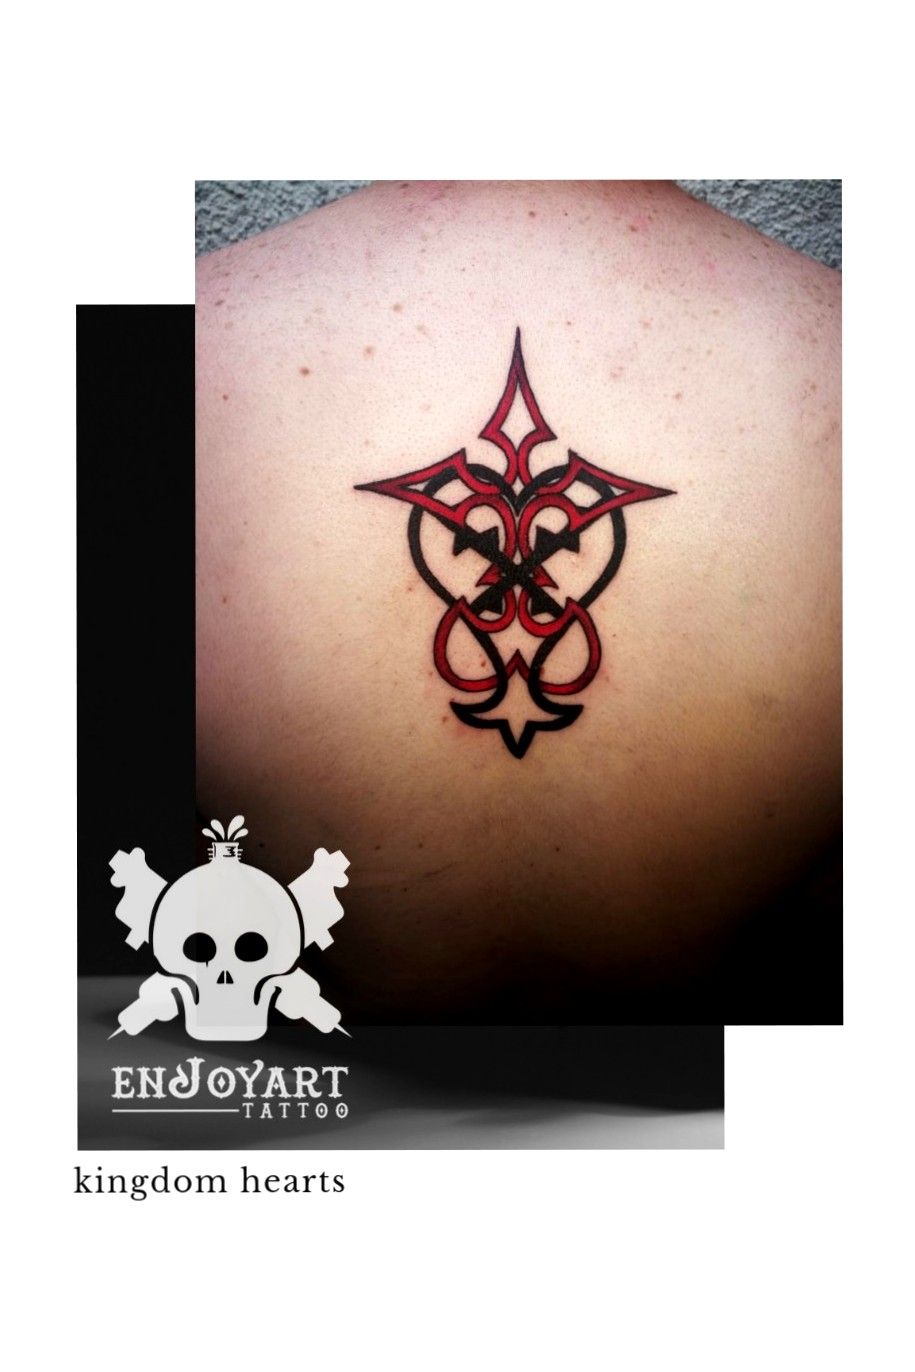 Tattoo Kingdom Hearts   Kingdom hearts tattoo Tattoos Heart tattoo